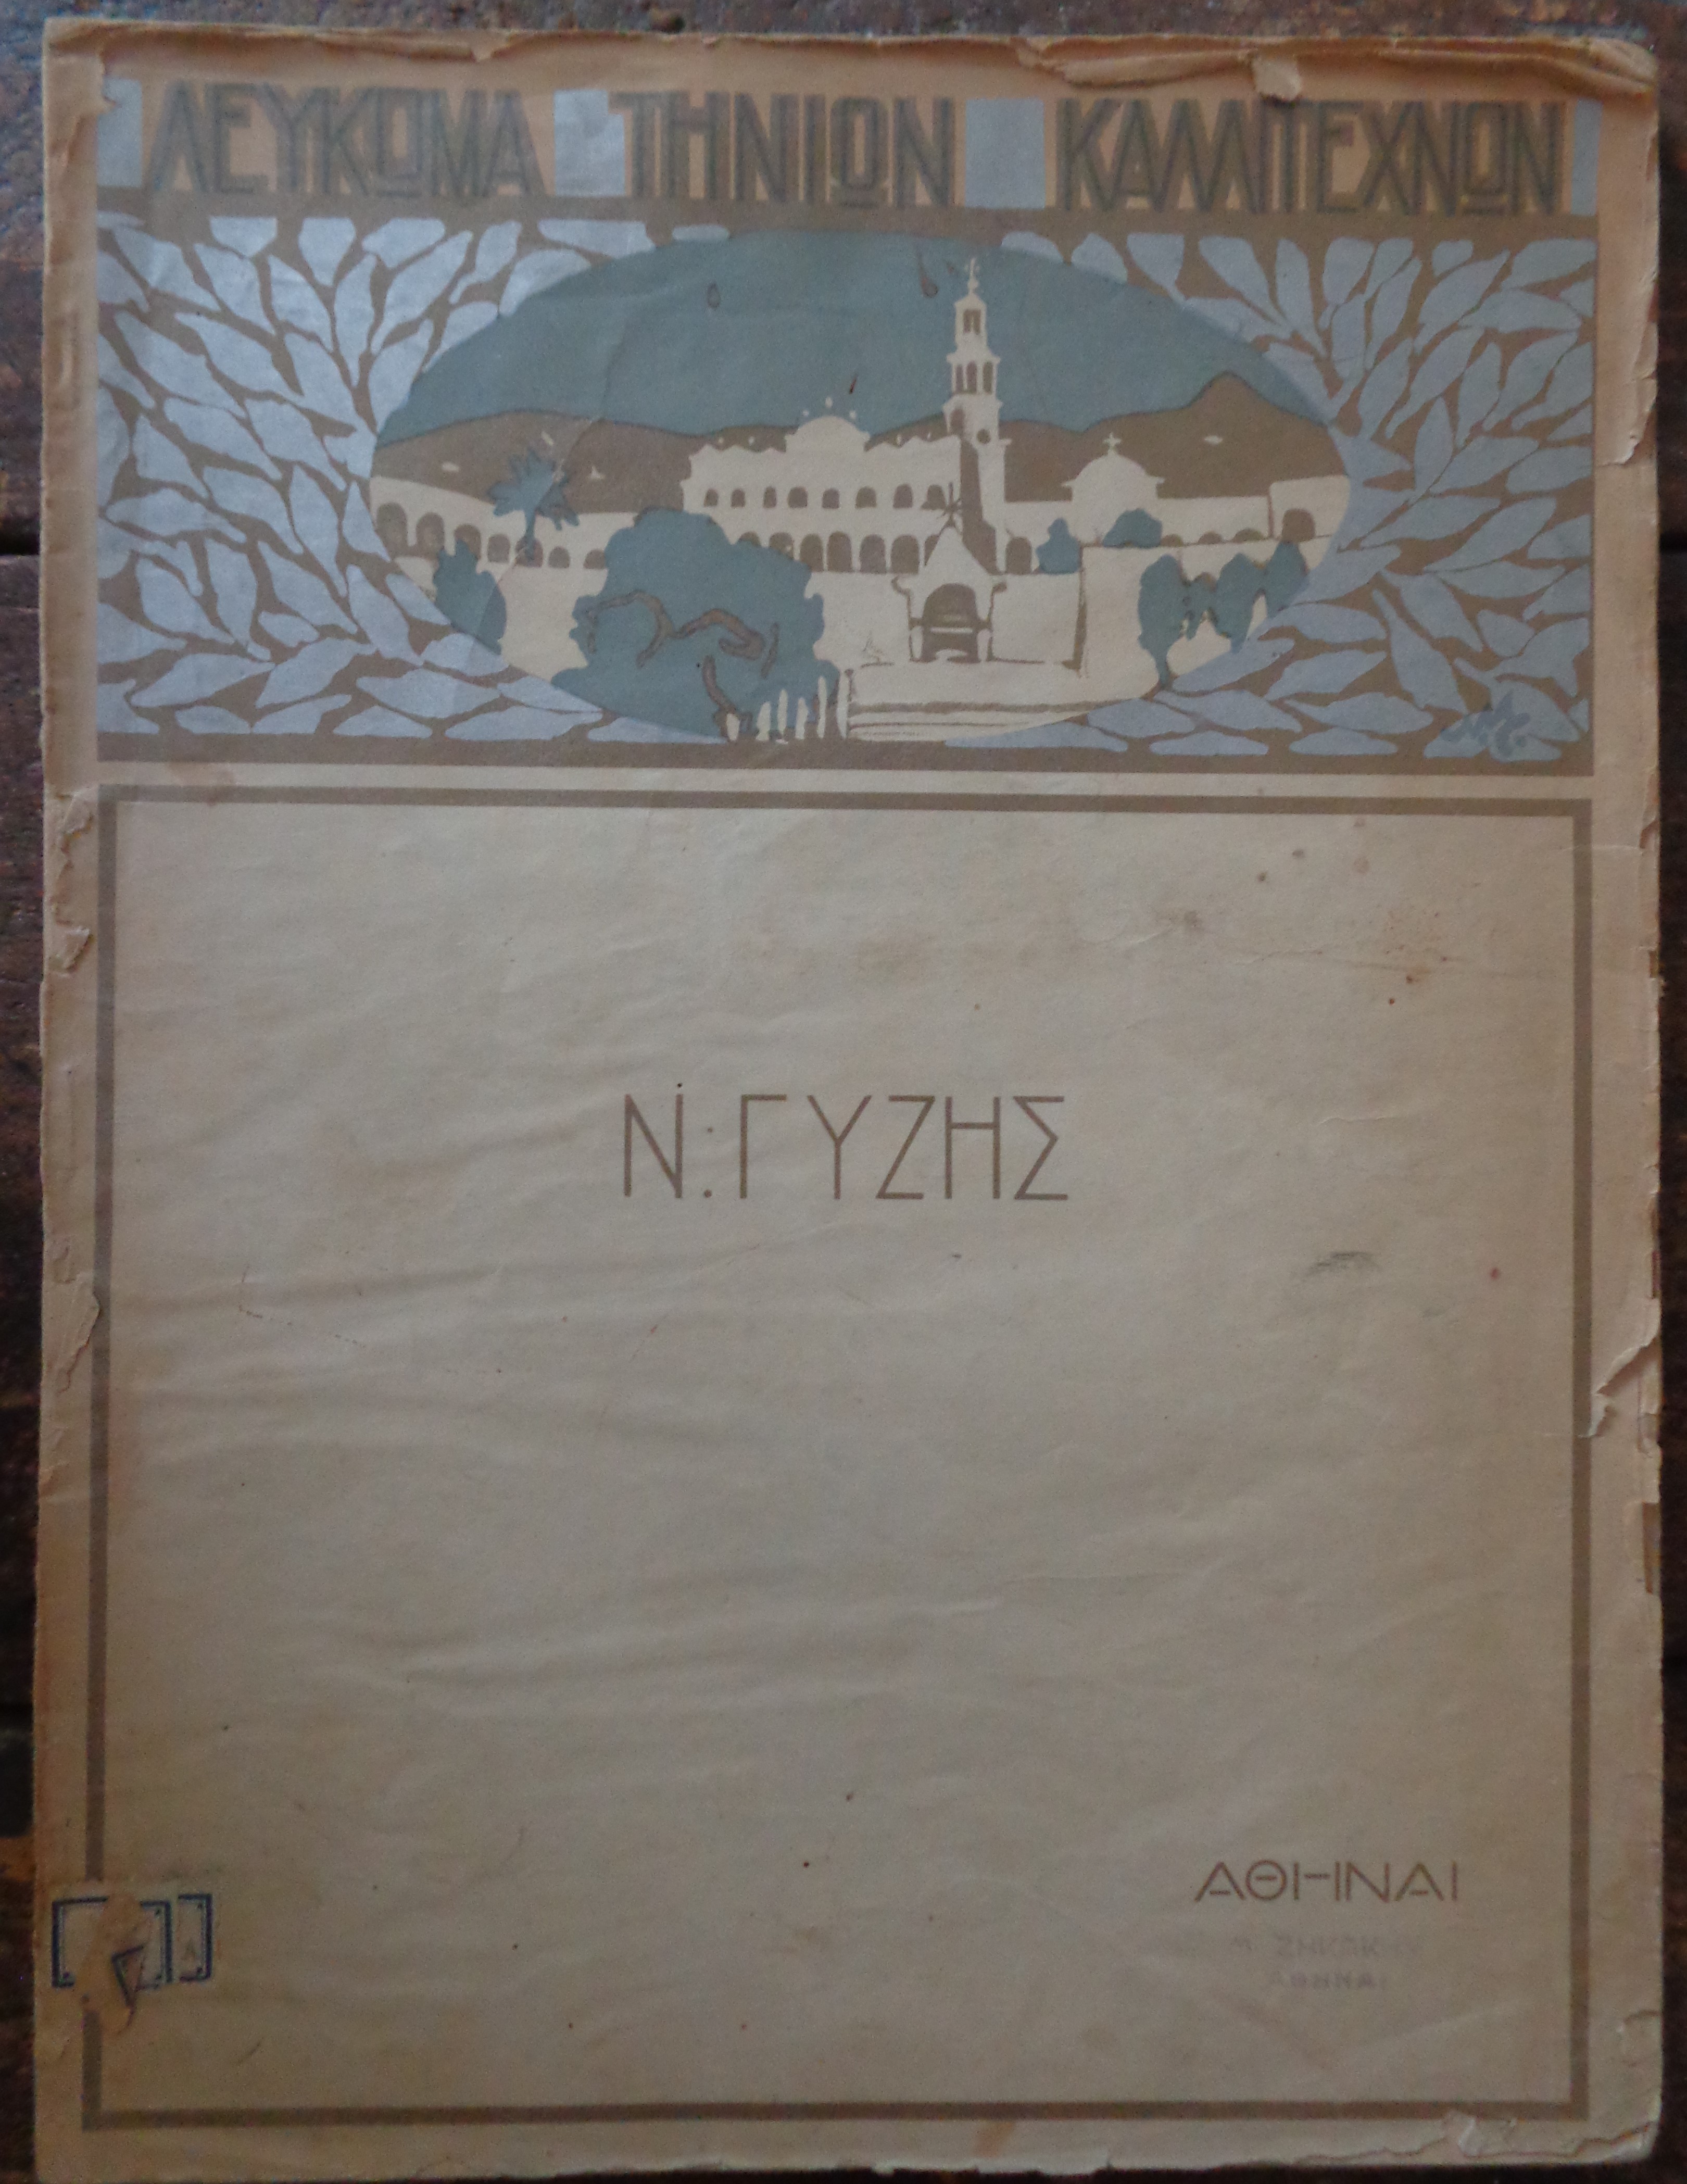 ΓΥΖΗΣ ΝΙΚΟΛΑΟΣ Λεύκωμα Τηνίων Καλλιτεχνών, αρ. 1: Ν. Γύζης 1842-1900 τυπογραφείο «Εστία», Αθήνα, 1925 